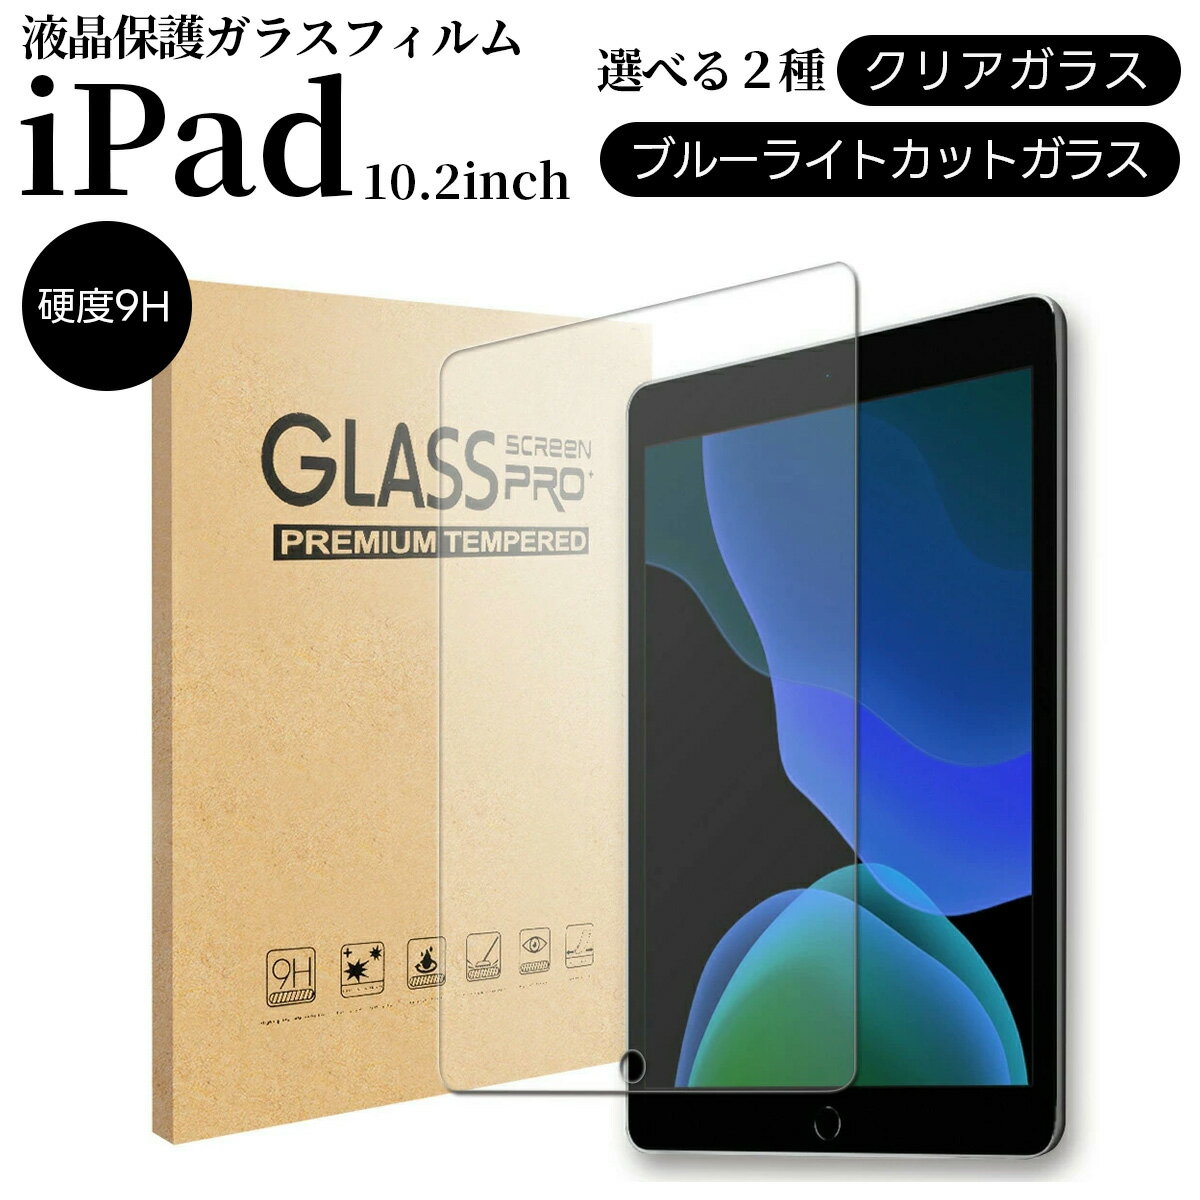 iPad 10.2 ガラスフィルム ブルーライ